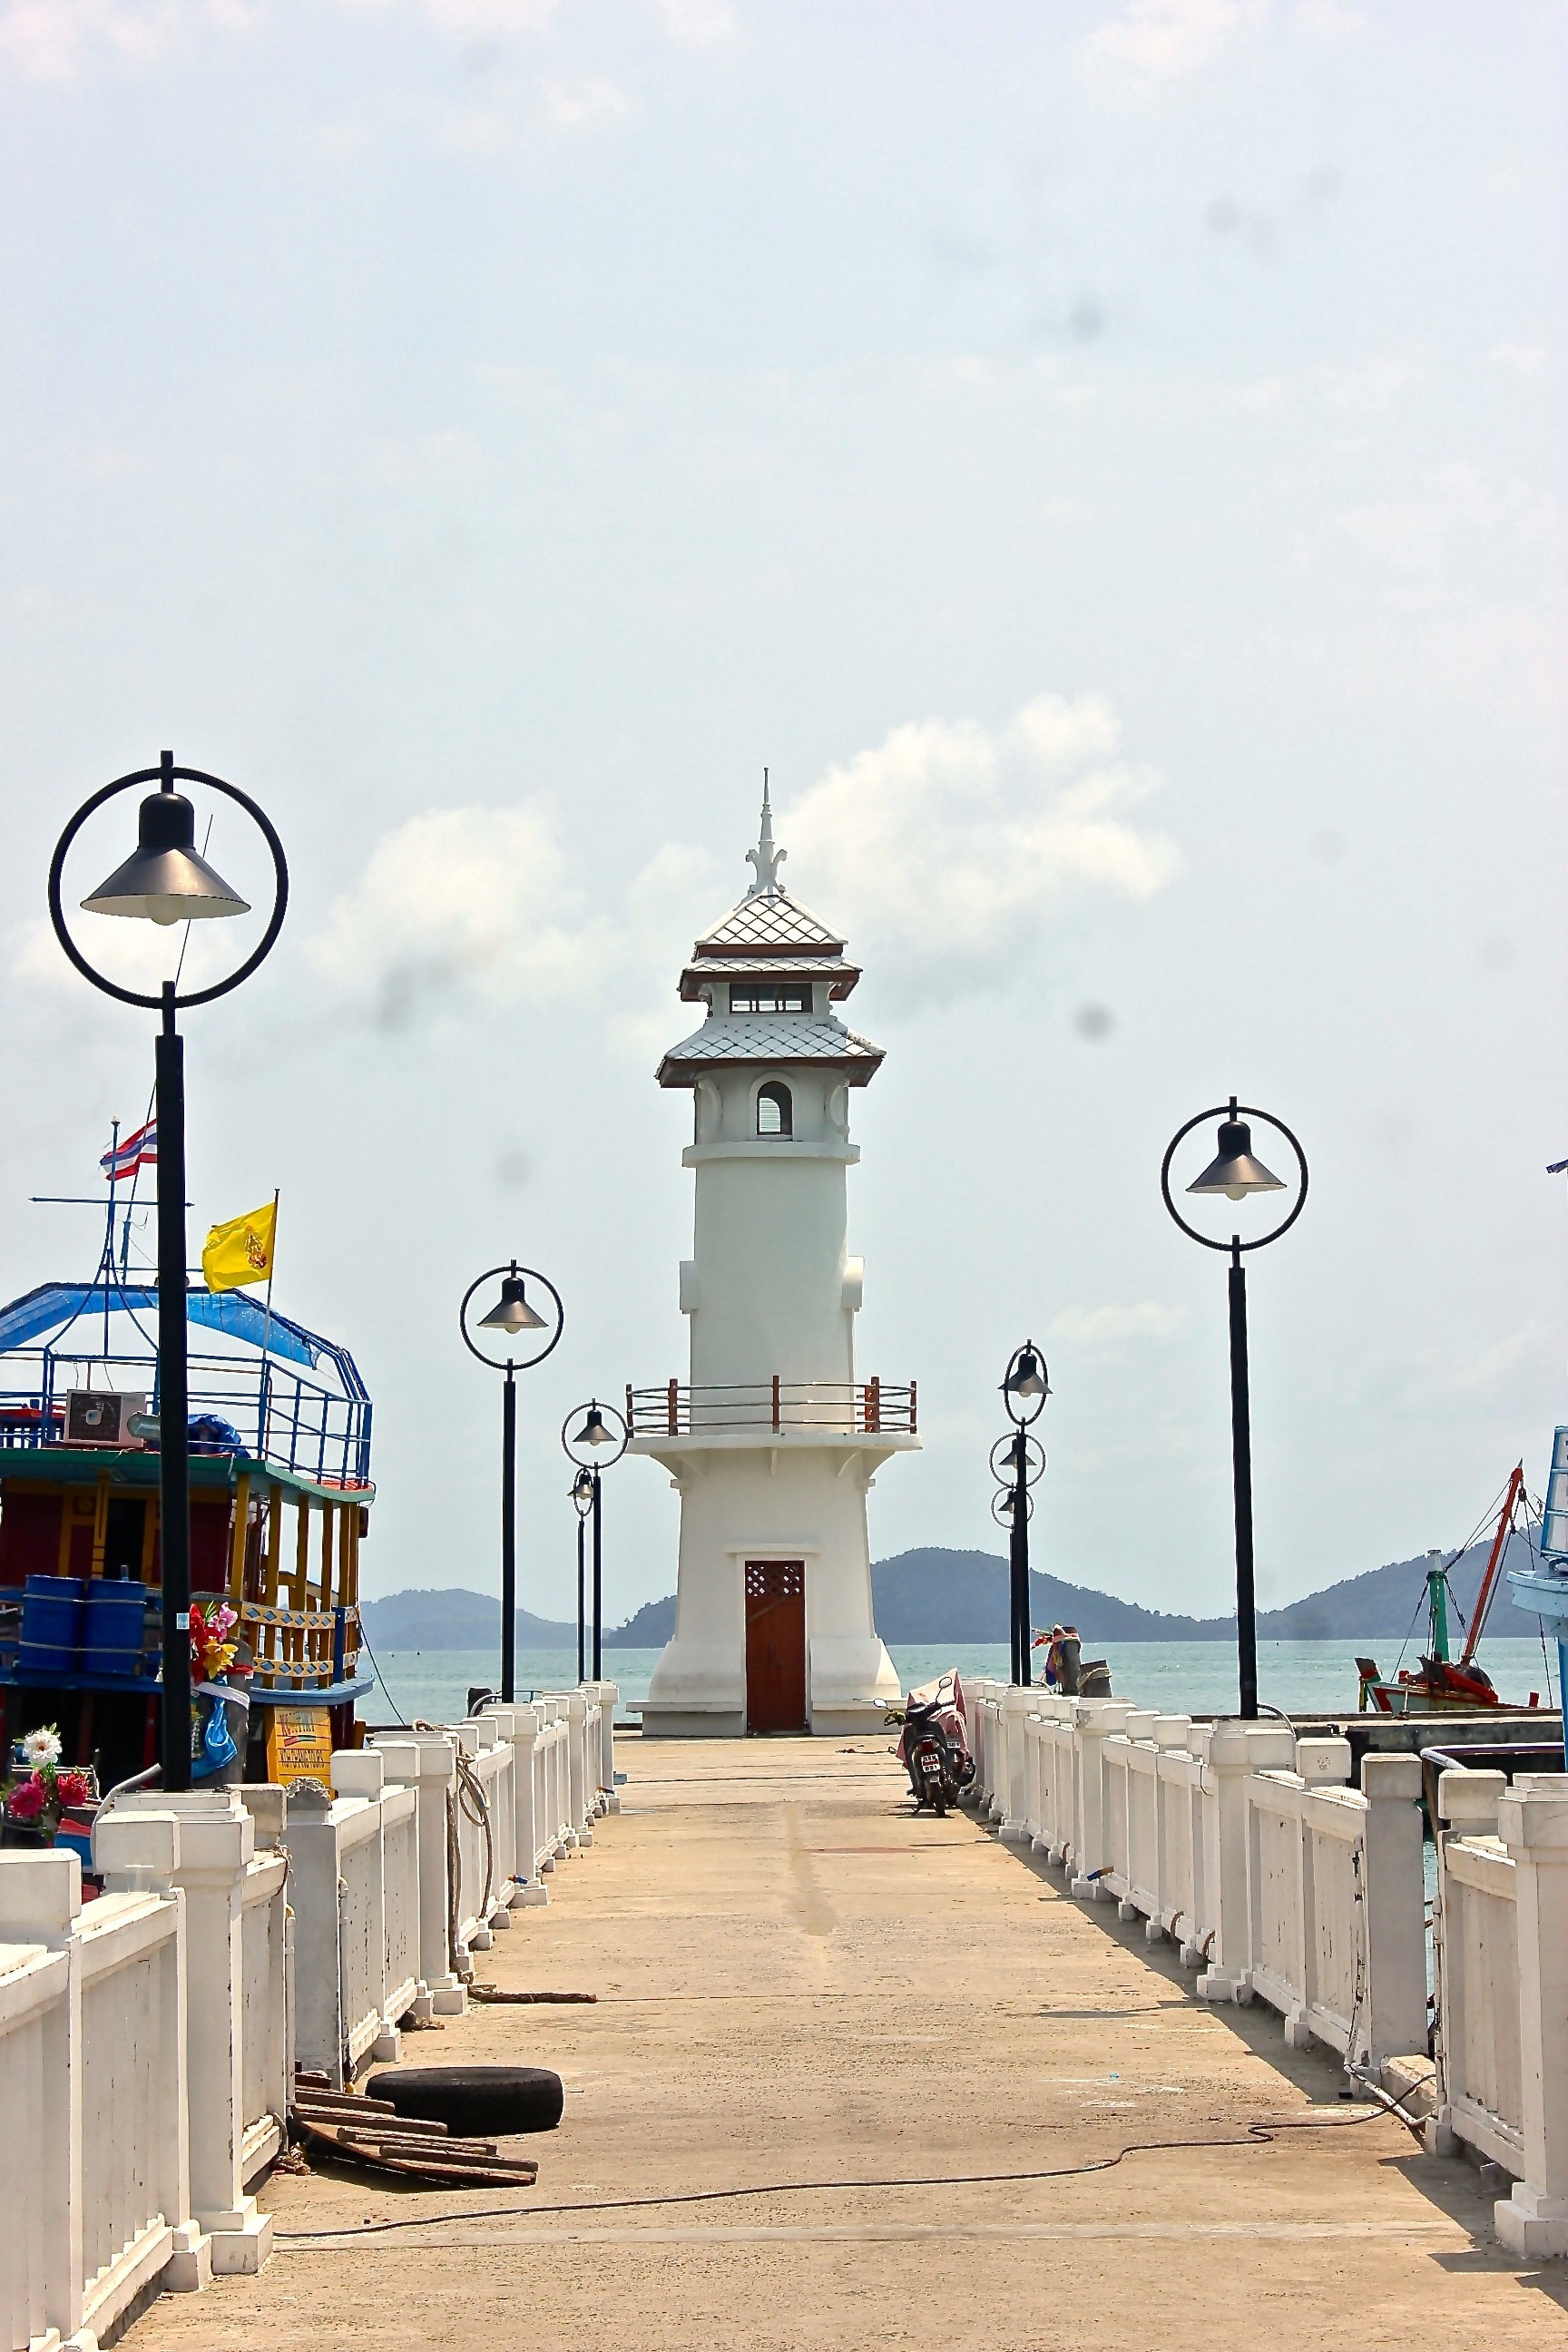 Pier, Lighthouse, Bangbao, Port, travel destinations, sky